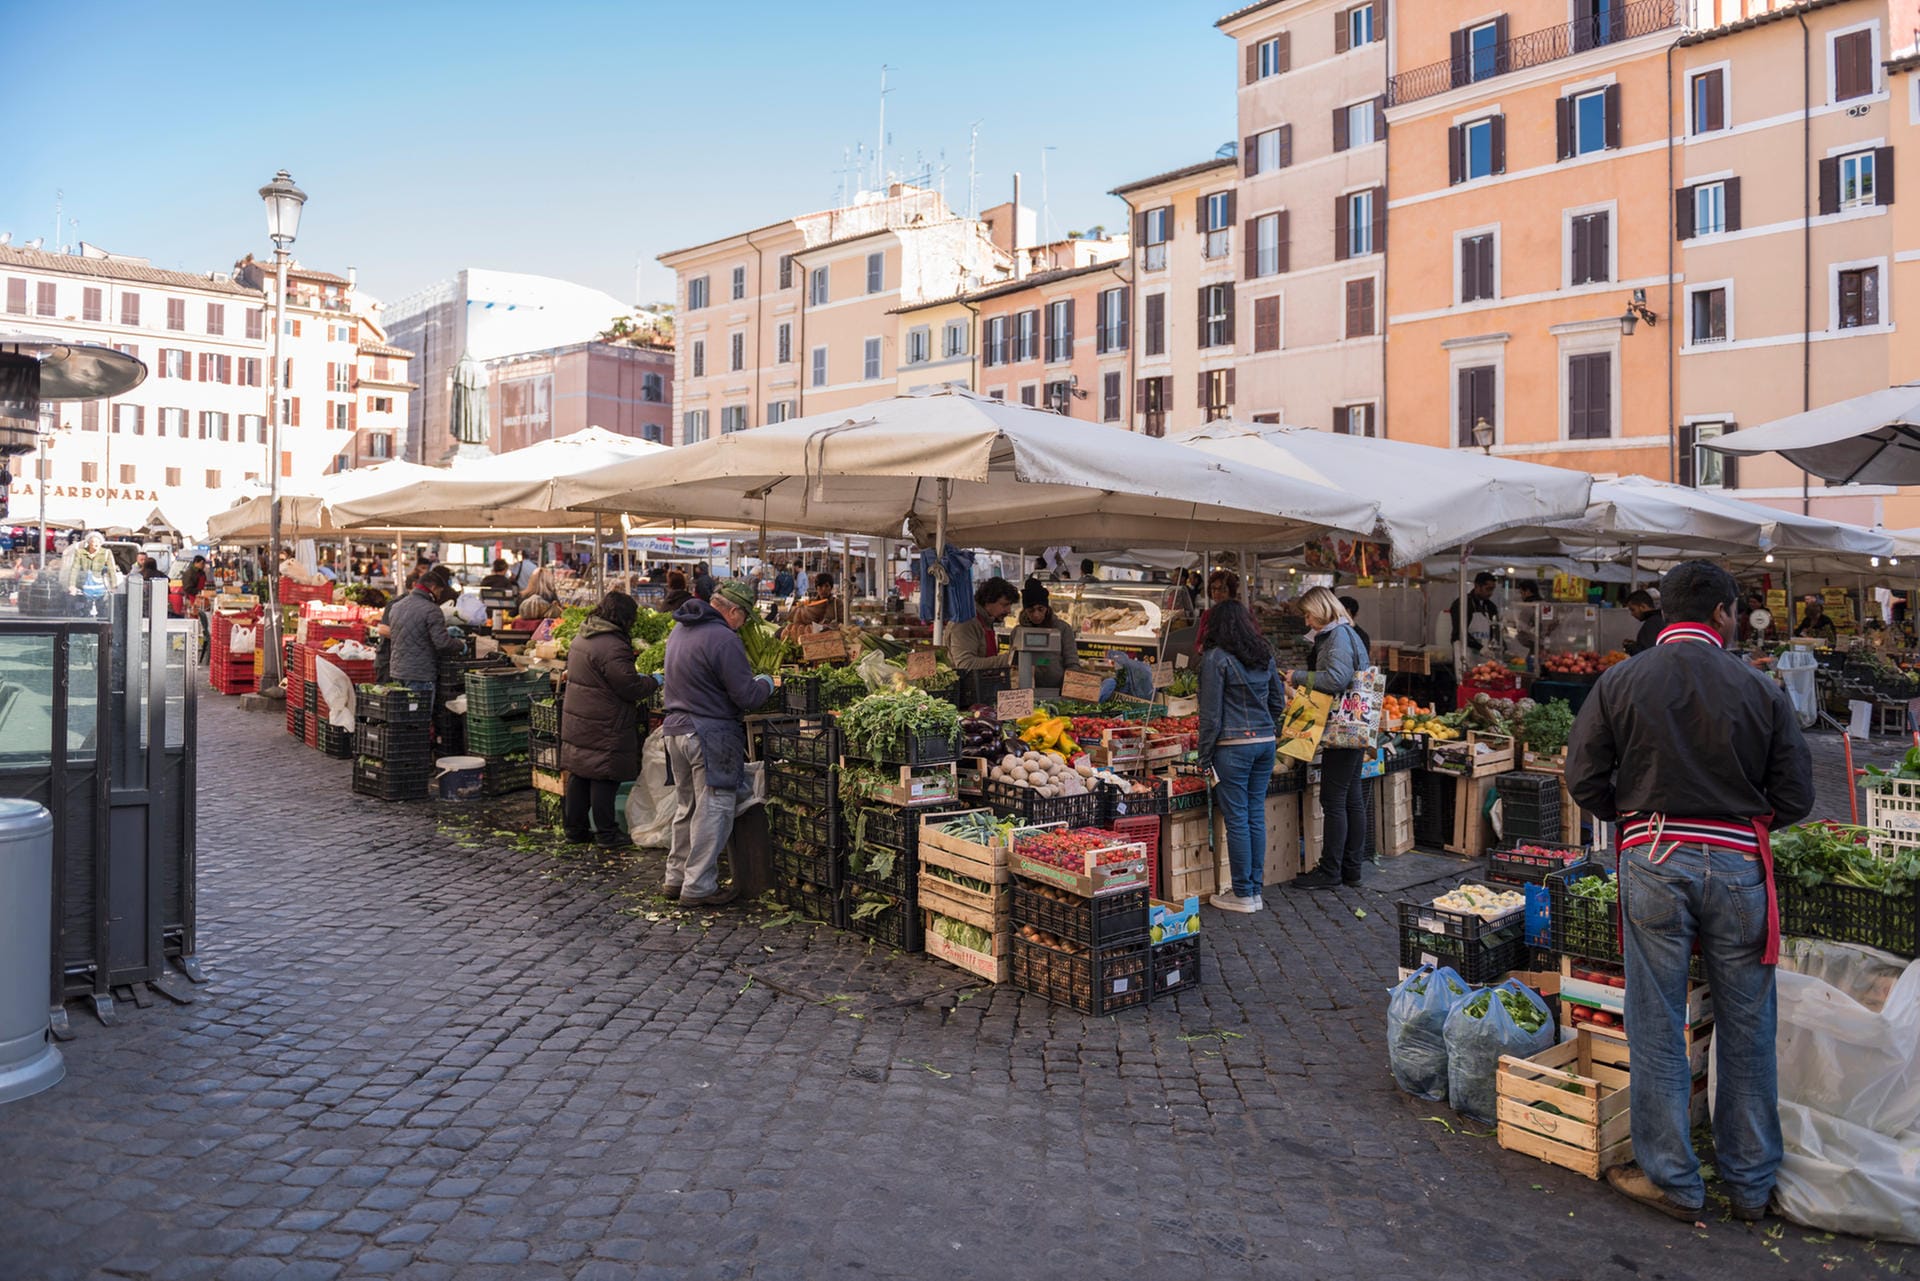 Campo dei Fiori: Wer ausgefallene Souvenirs oder lokale Köstlichkeiten kaufen möchte, ist auf dem Campo dei Fiori richtig.